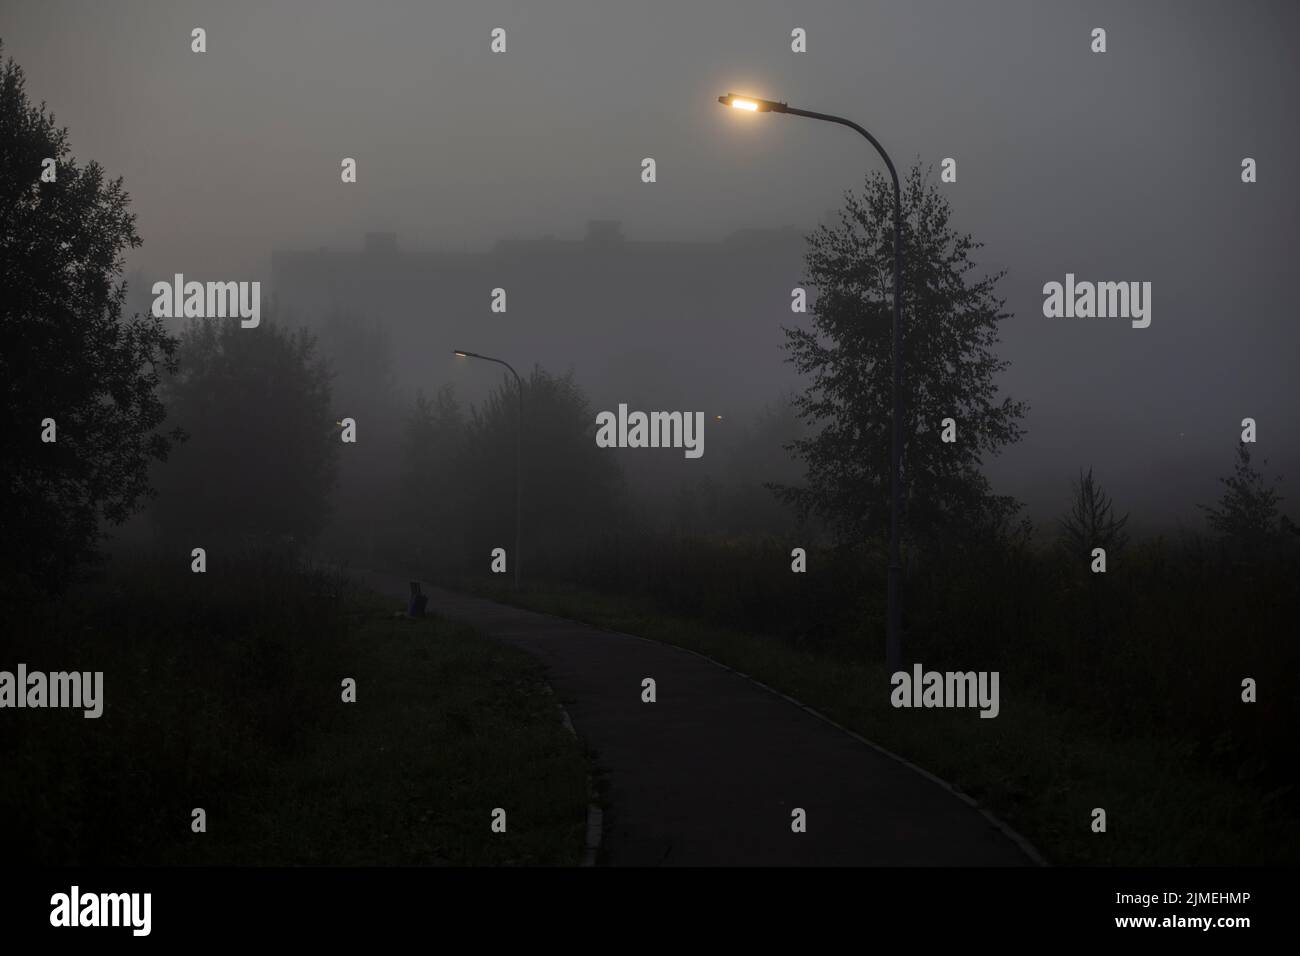 Ein Lichtmast im Nebel. Lichtquelle am frühen Morgen. Nasses Wetter im Park. Stockfoto